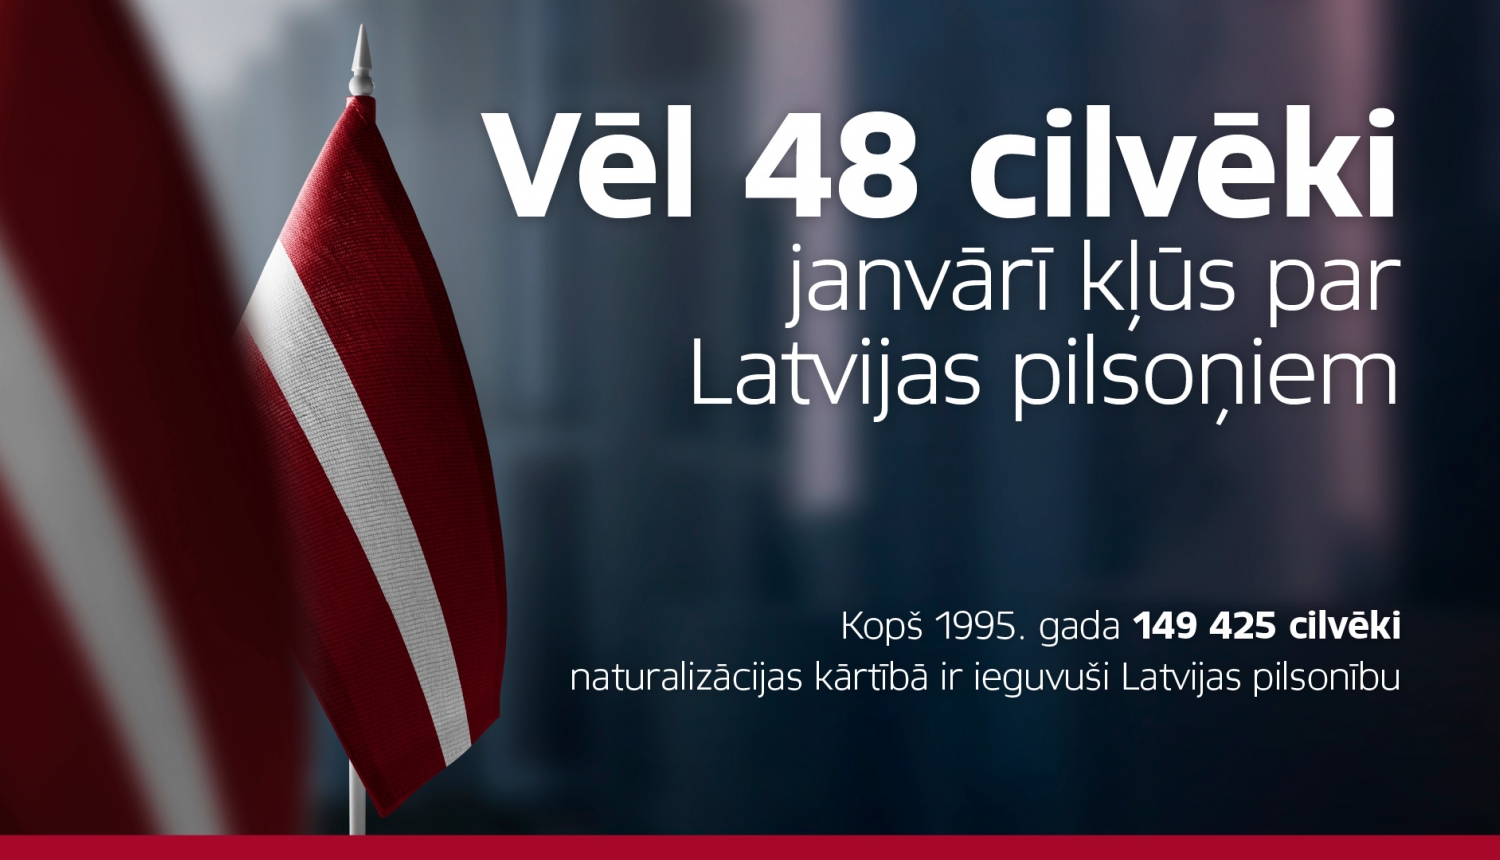 Latvijas karogs un teksts "Vēl 48 cilvēki janvārī kļūs par Latvijas pilsoņiem"